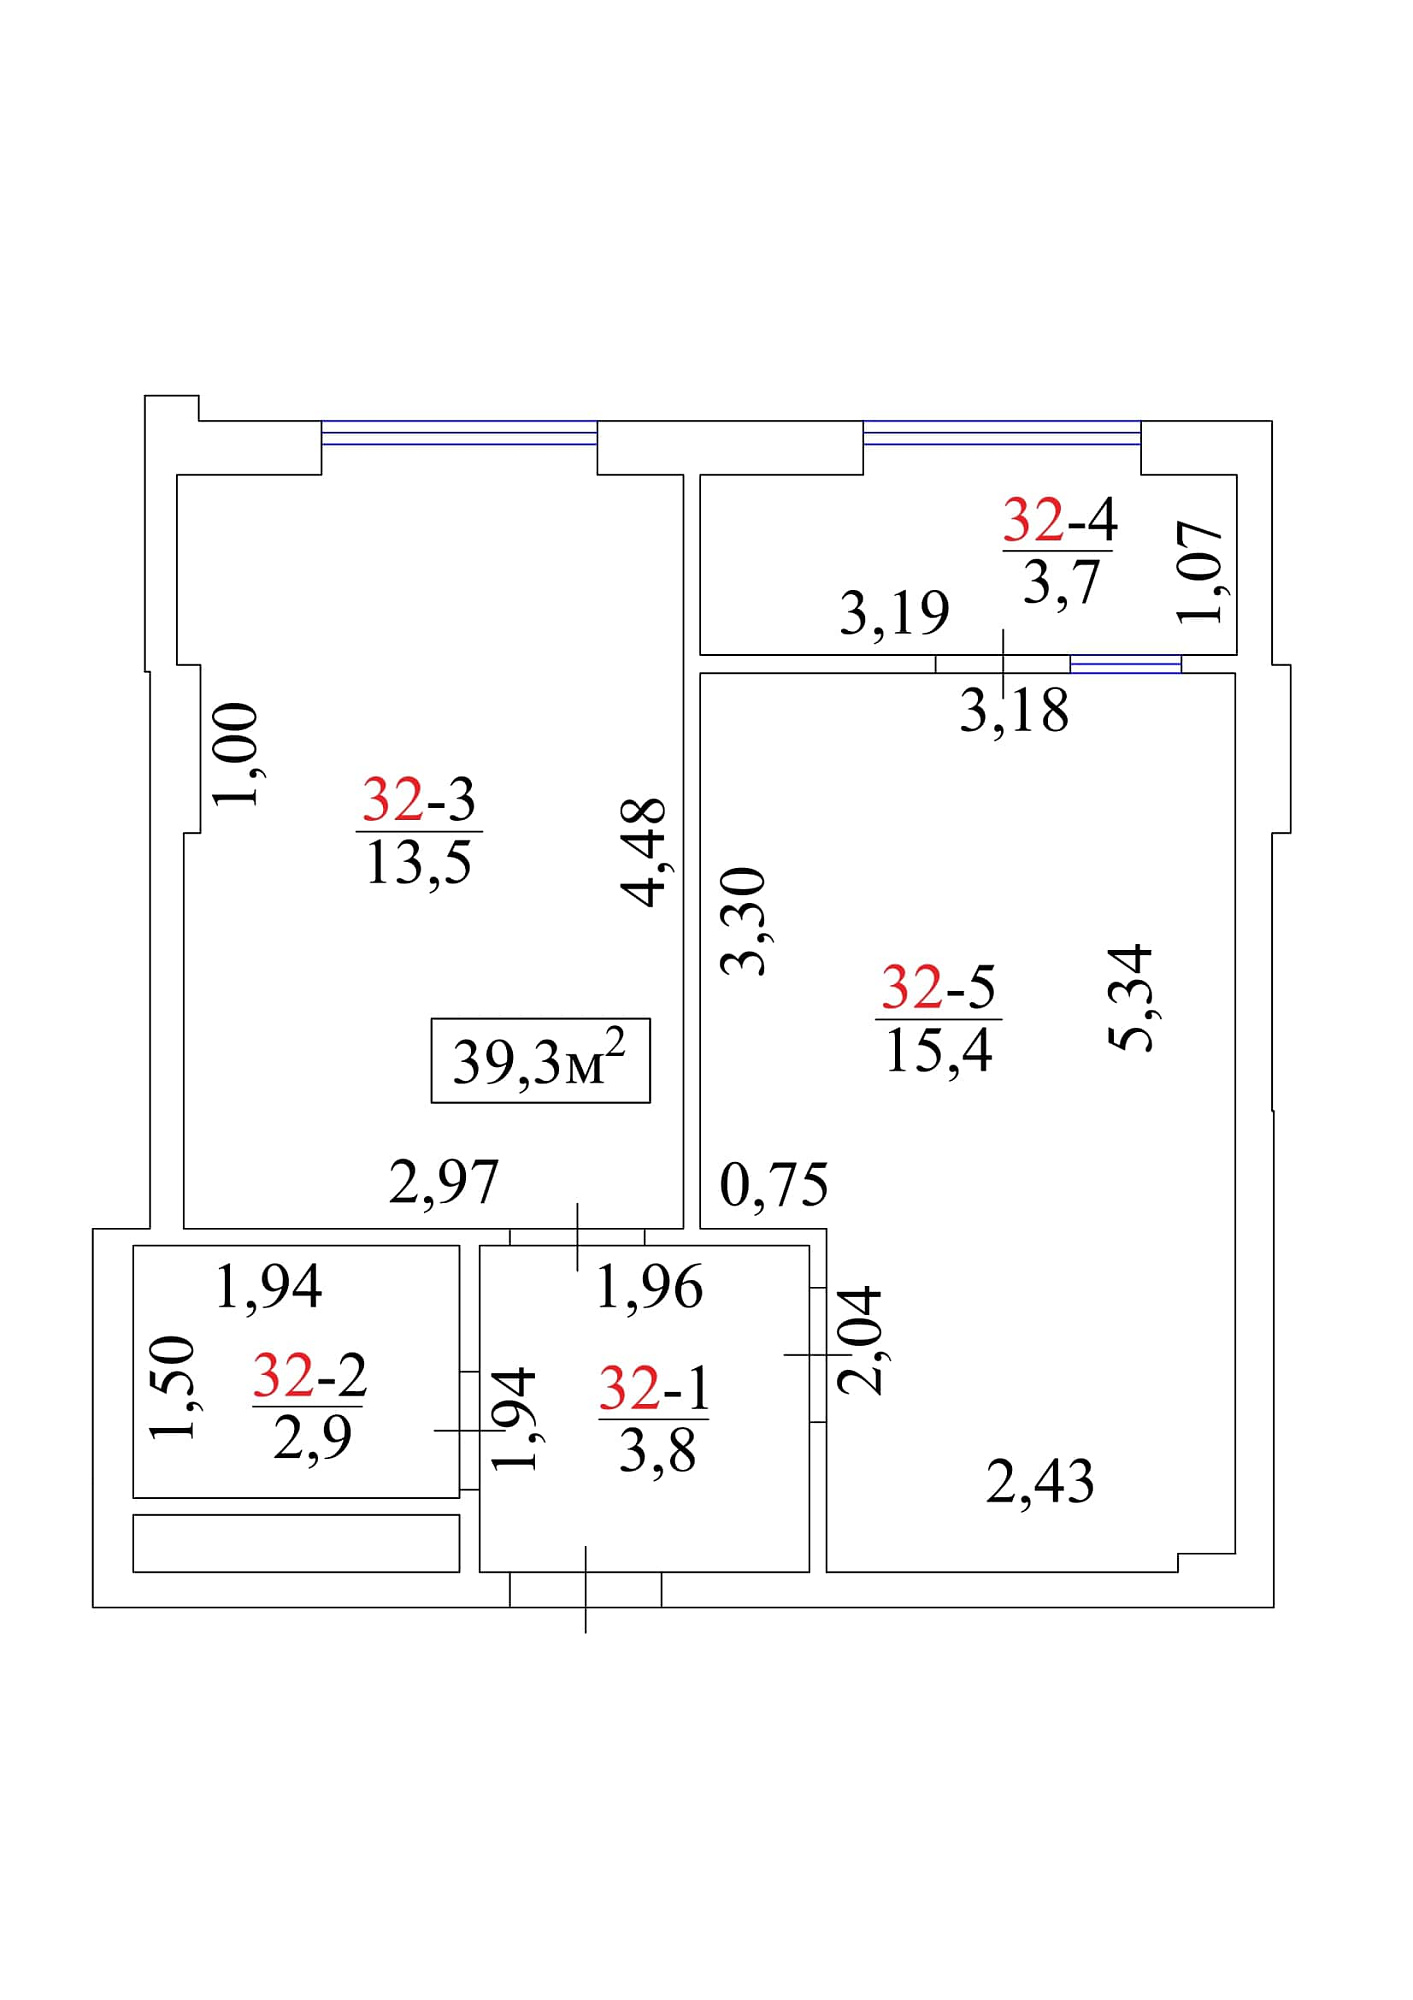 Планировка 1-к квартира площей 39.3м2, AB-01-04/00032.